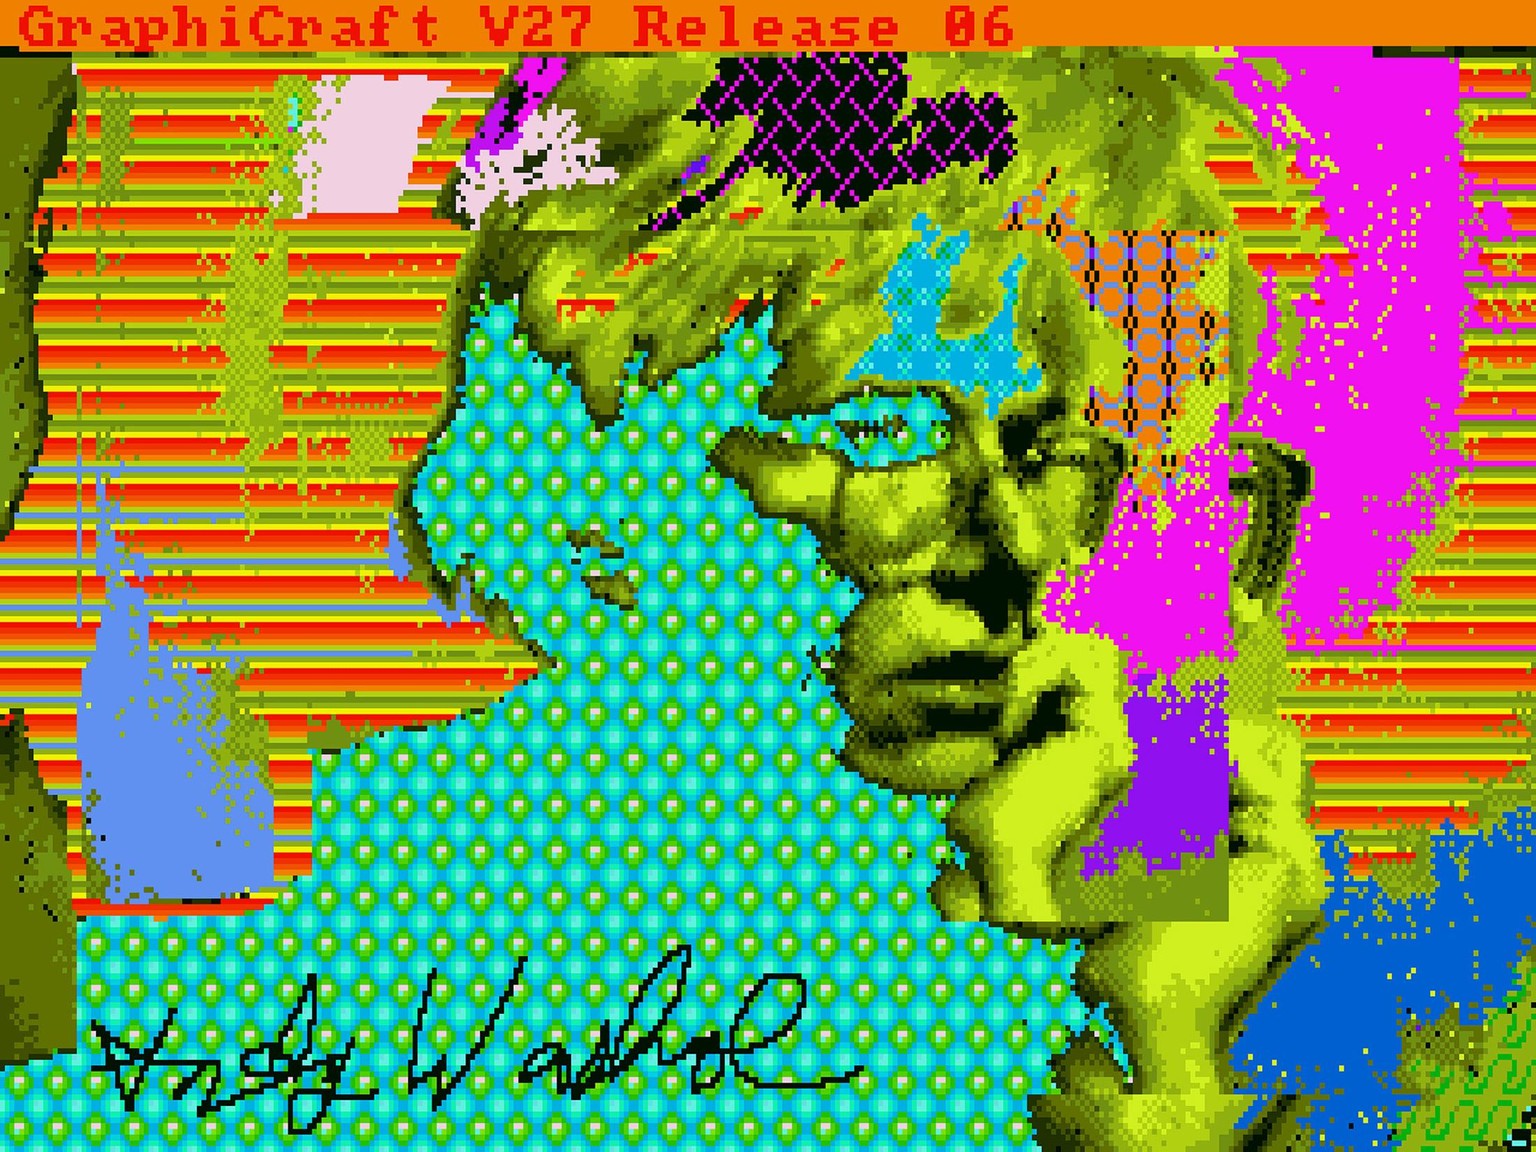 Elektronisch verfremdetes Selbstporträt des berühmten Pop-Art-Künstlers Andy Warhol.&nbsp;